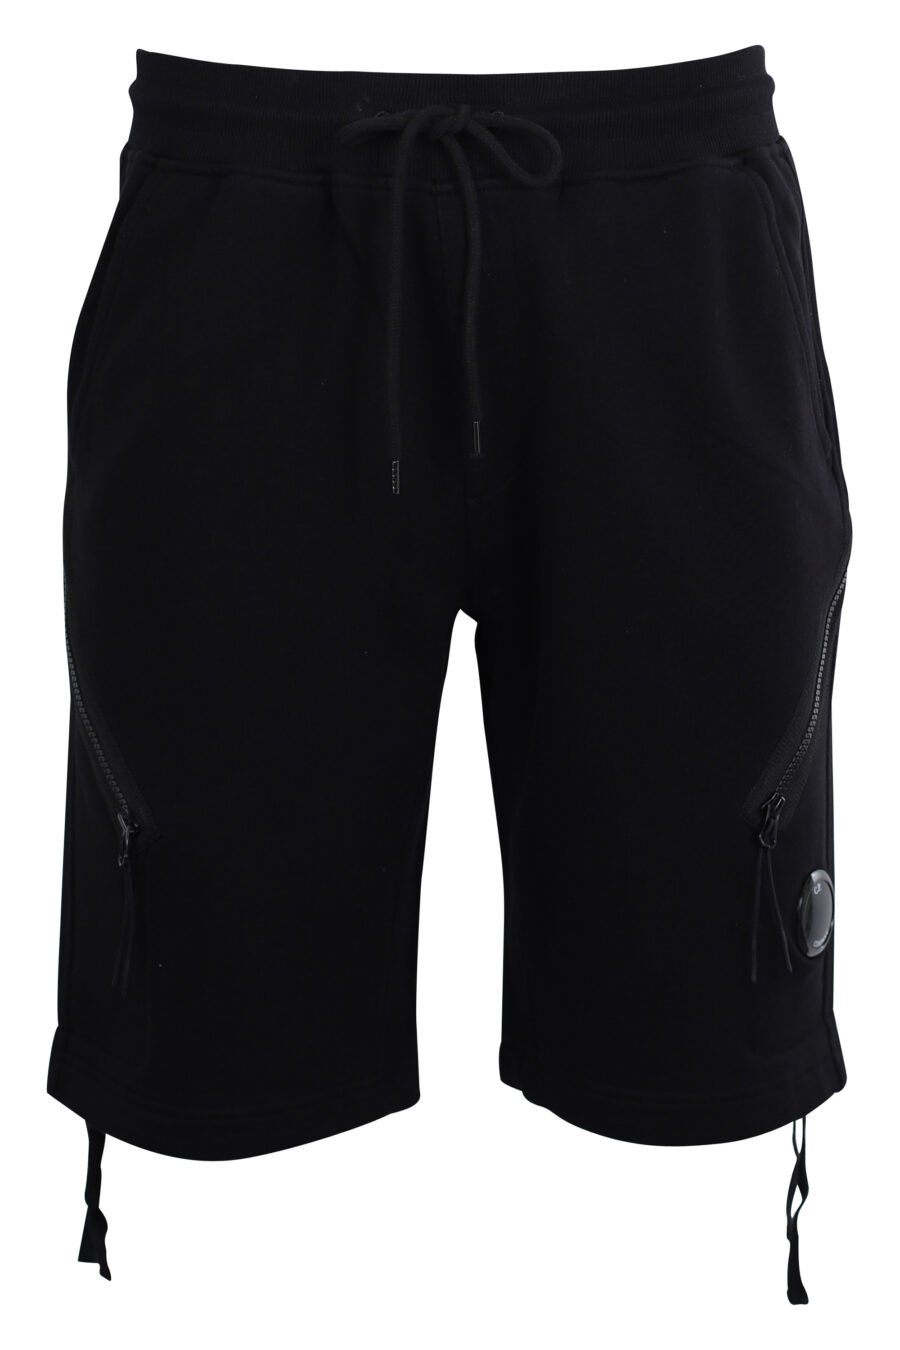 Pantalón corto negro estilo cargo con bolsillos diagonales y minilogo circular - IMG 2460